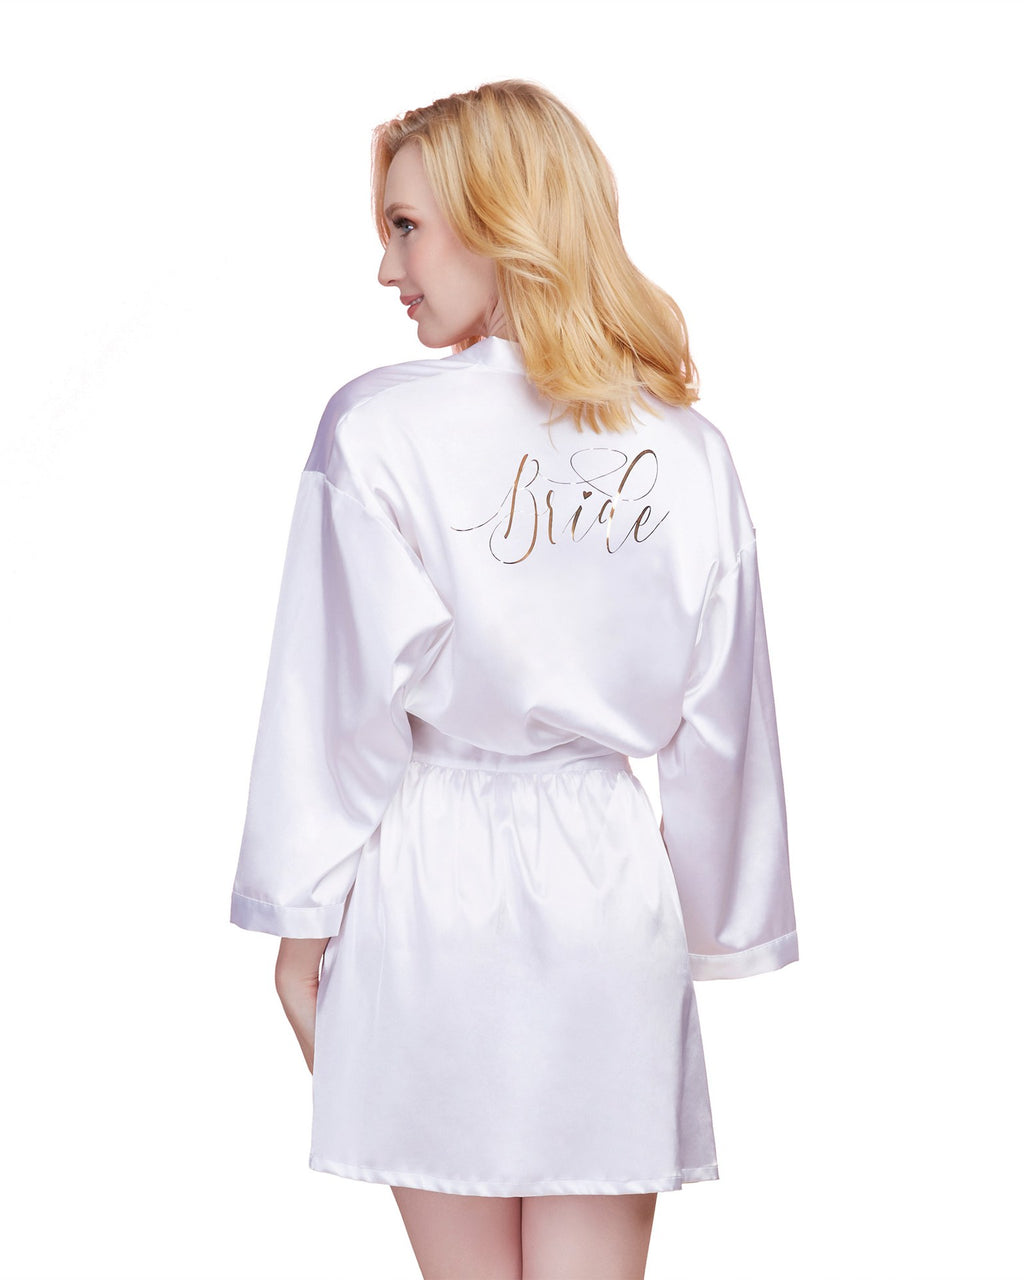 Bride Robe - Large - White DG-11292WHTL